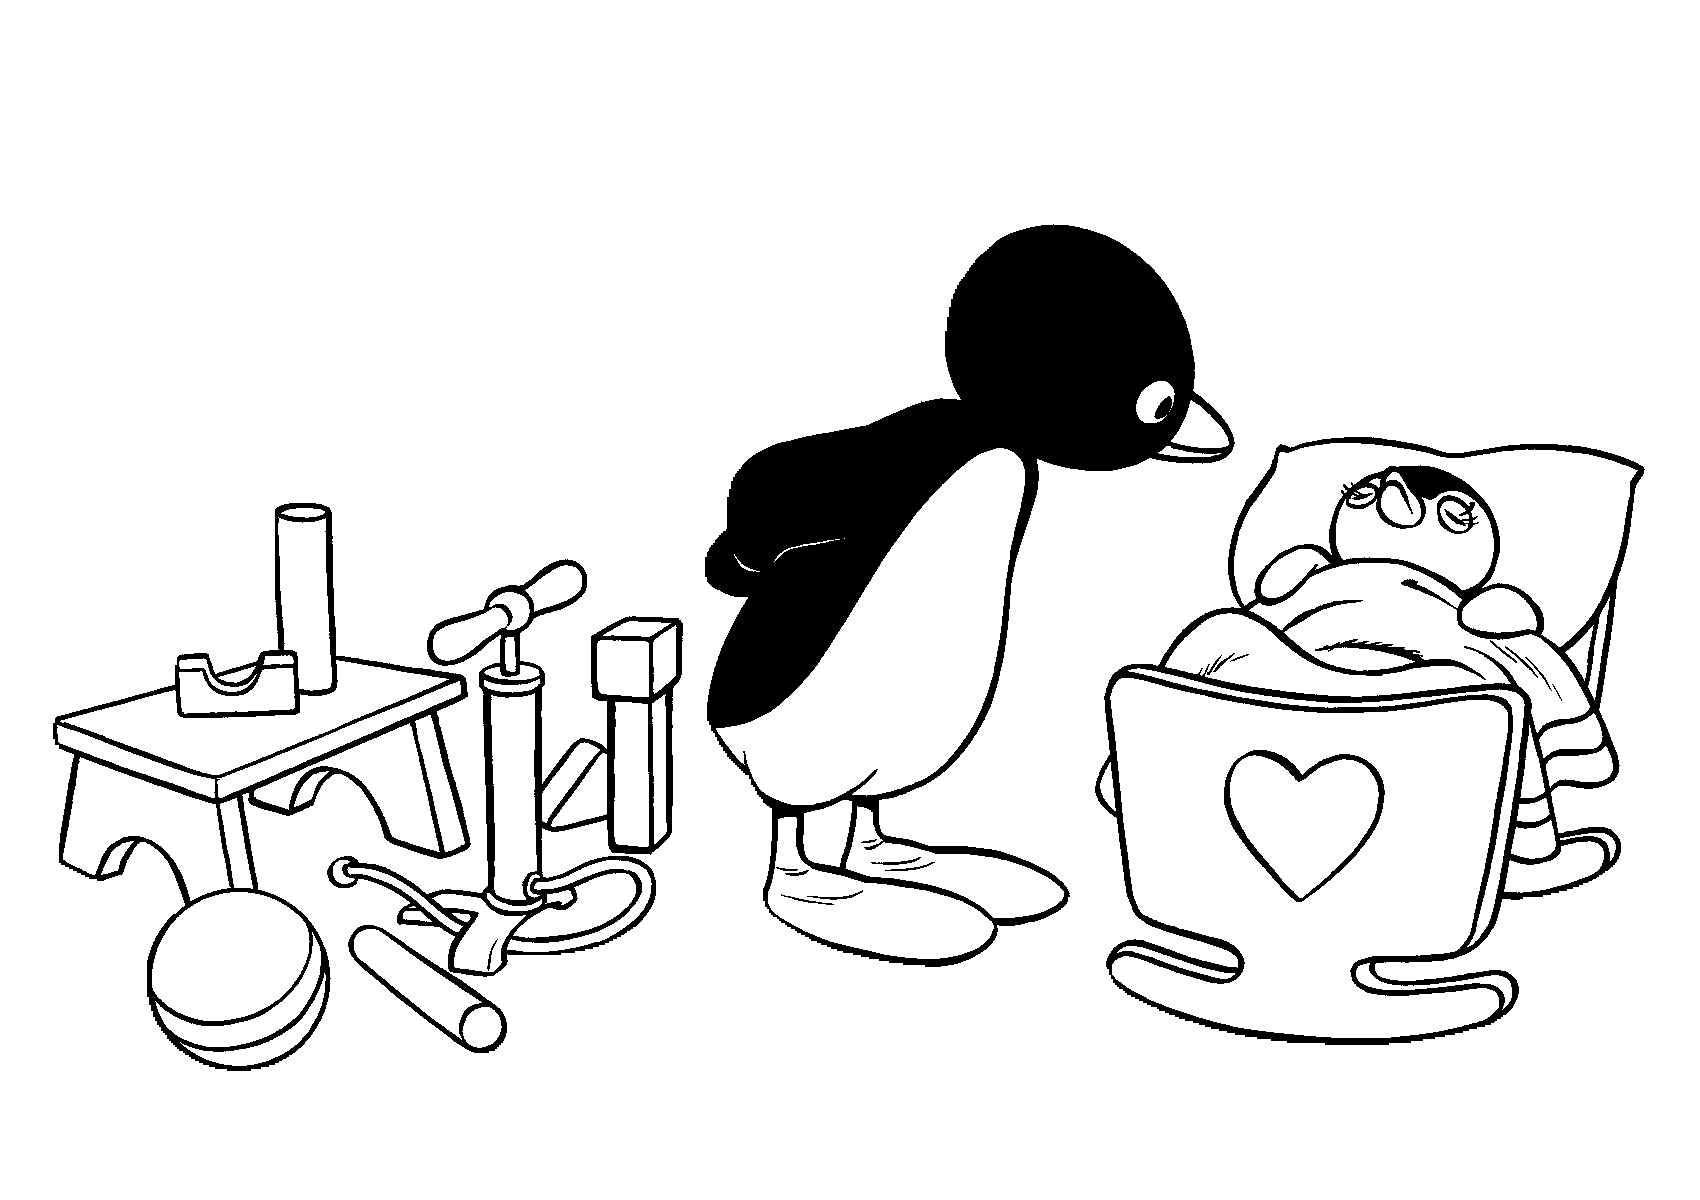 Dibujo 9 de Pingu para imprimir y colorear